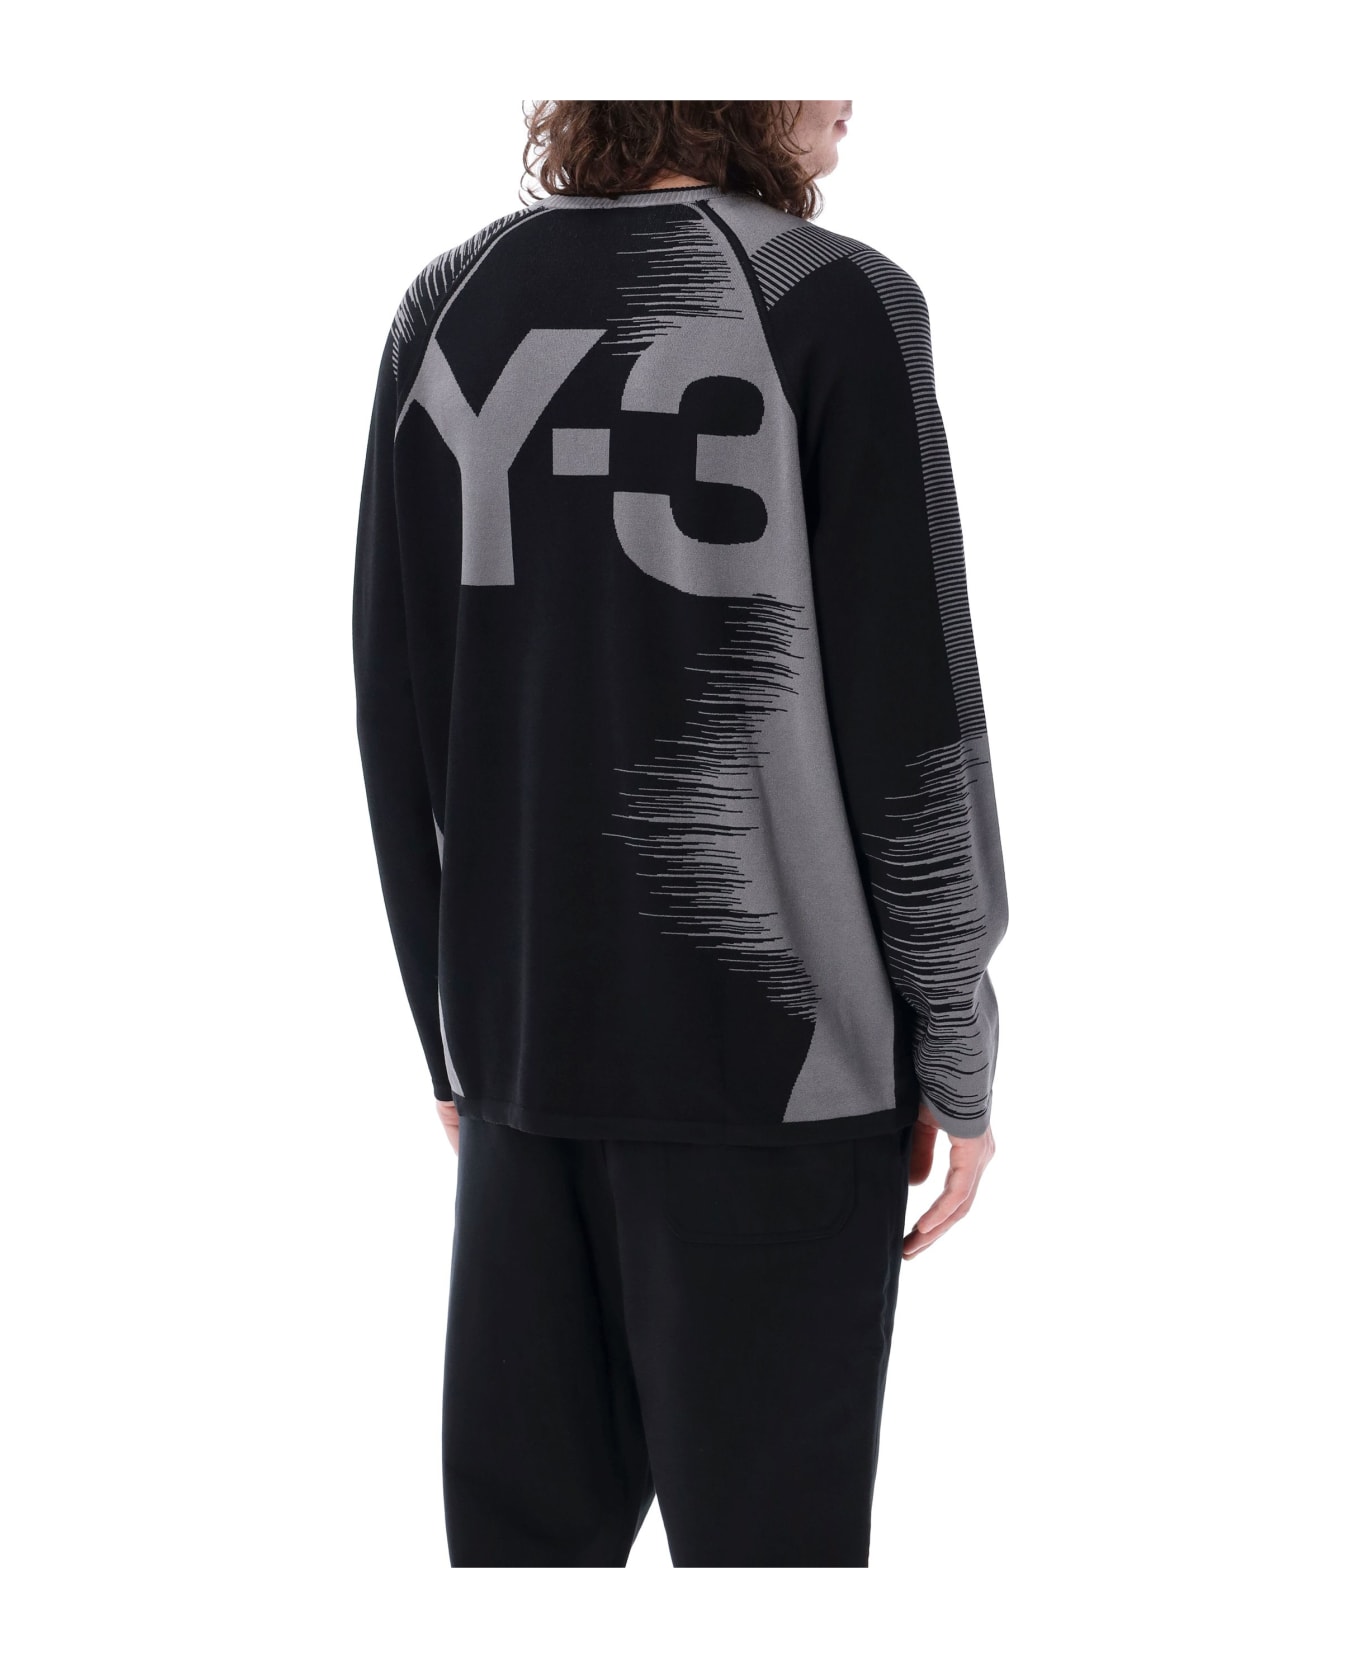 Y-3 Logo Knit Sweater - GREY BLACK